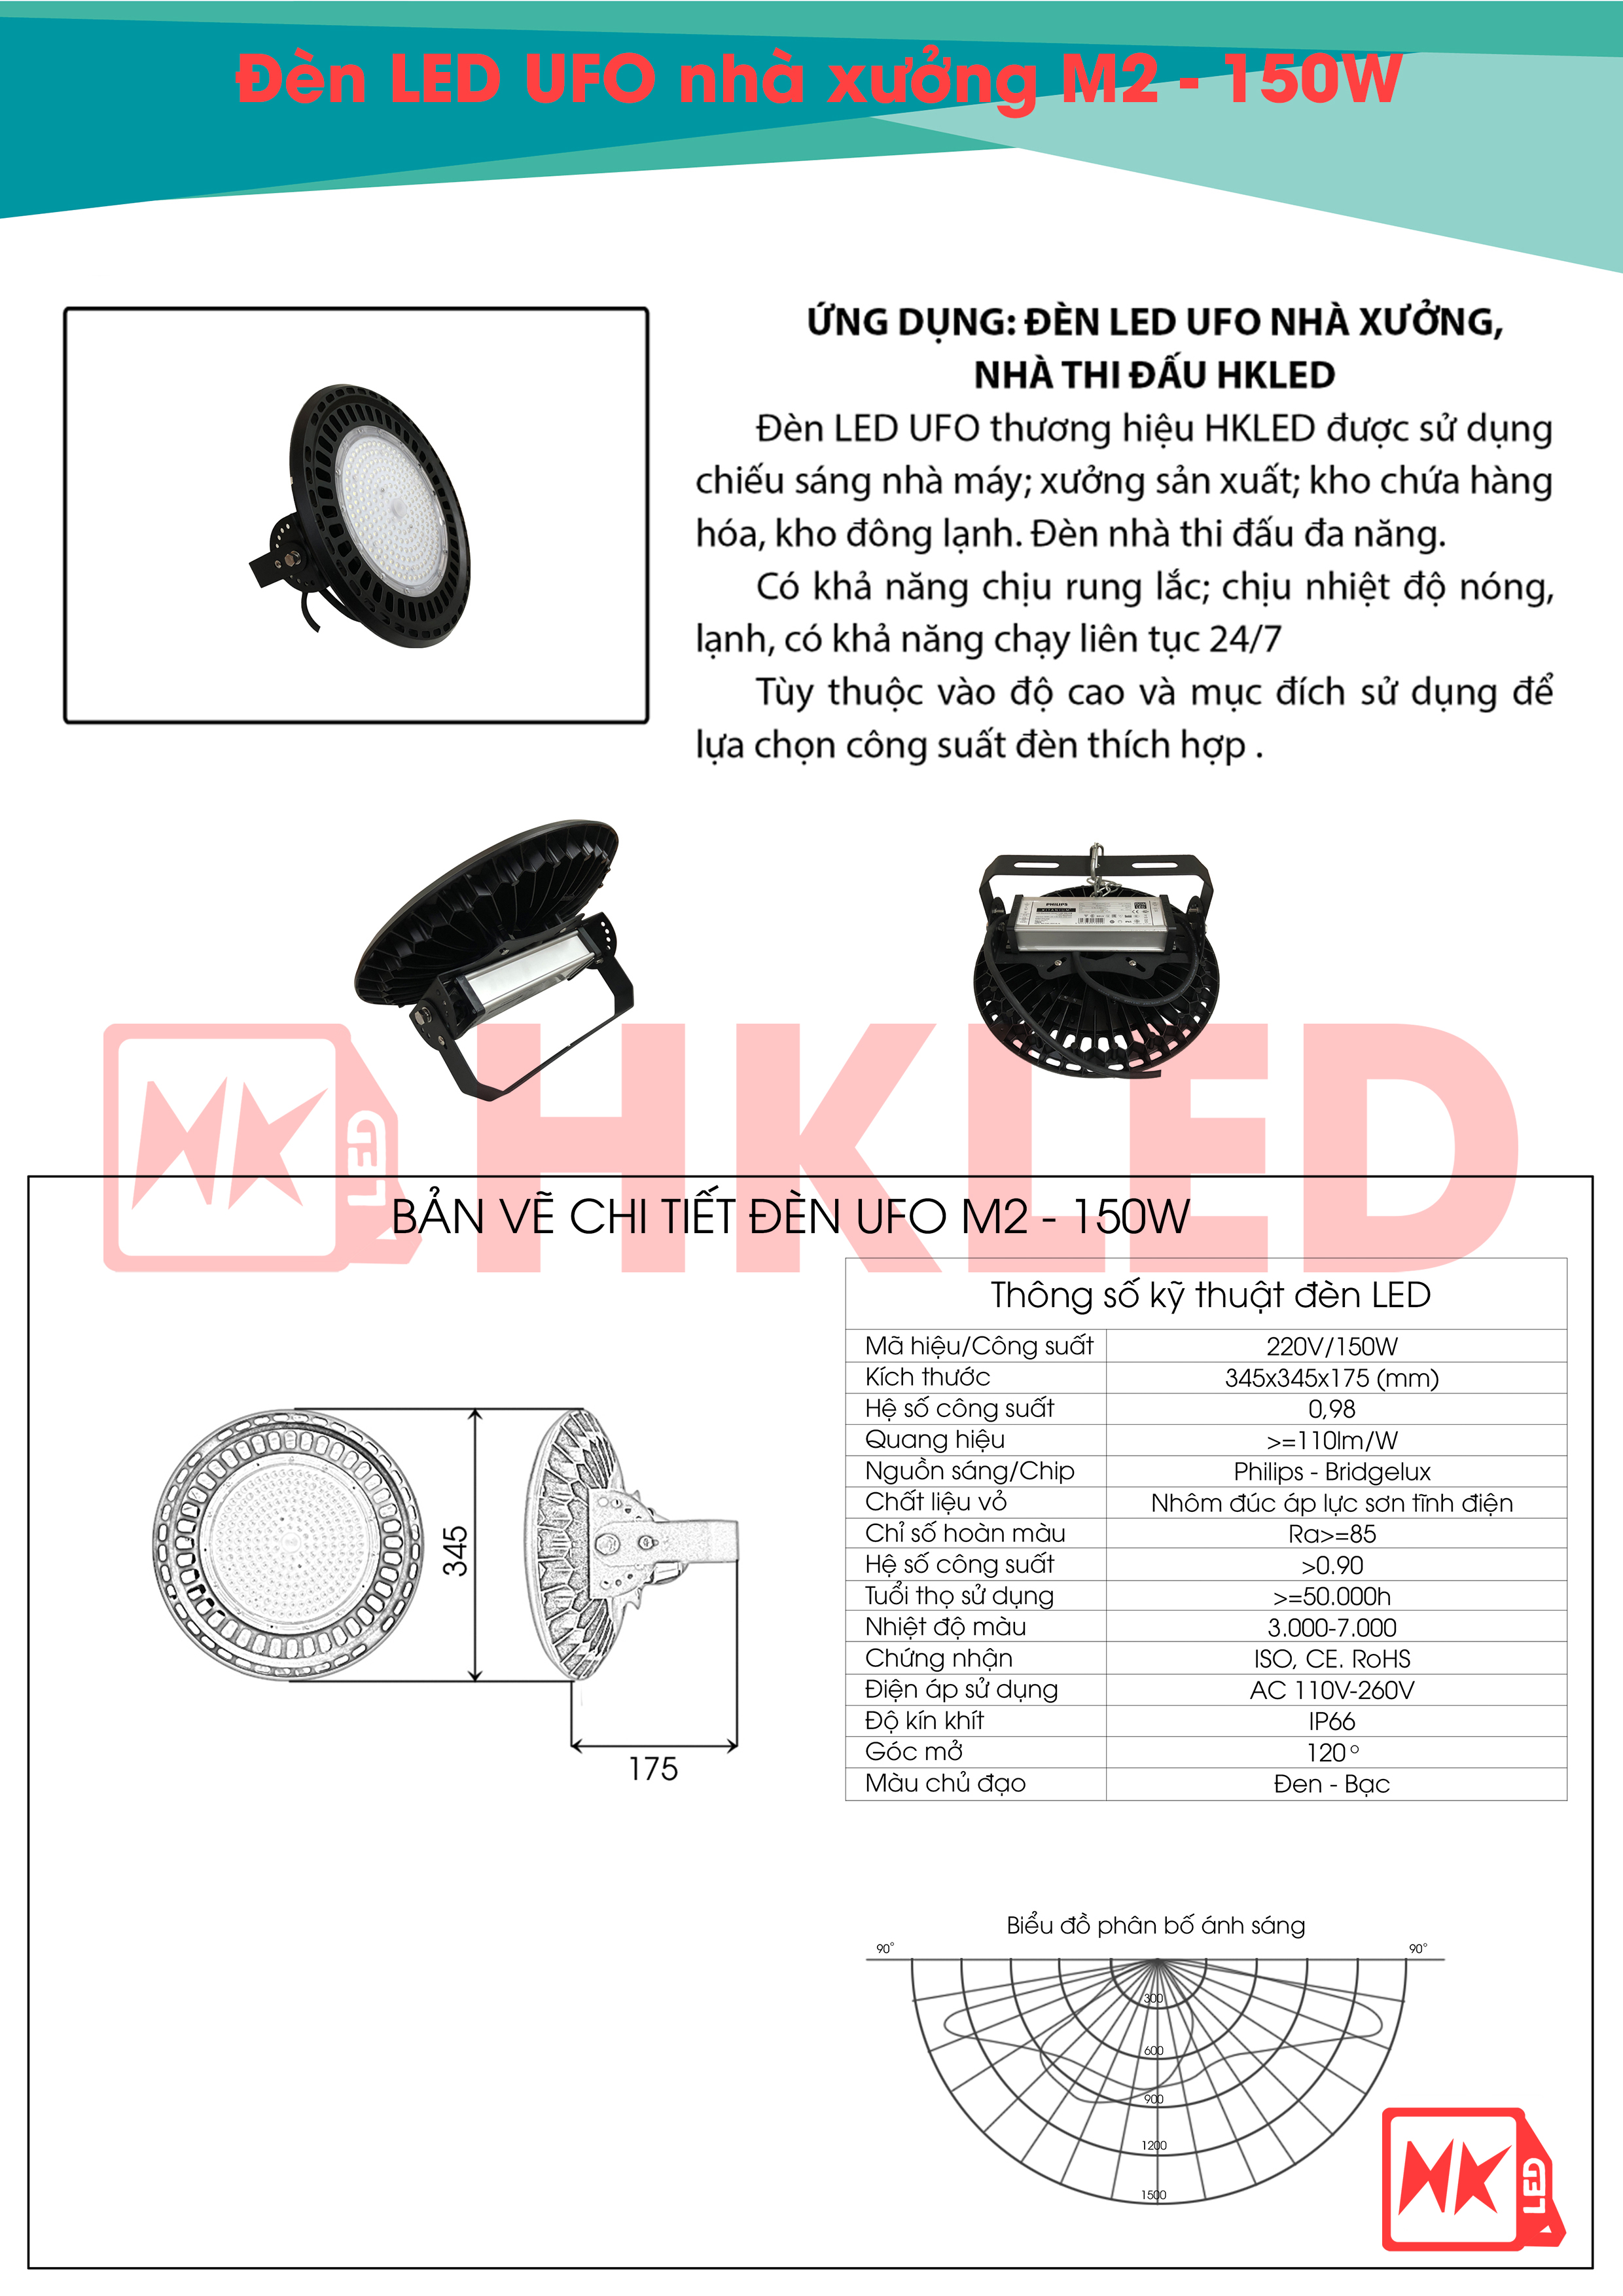 Ứng dụng, bản vẽ chi tiết và thông số kỹ thuật đèn UFO nhà xưởng M2 150W